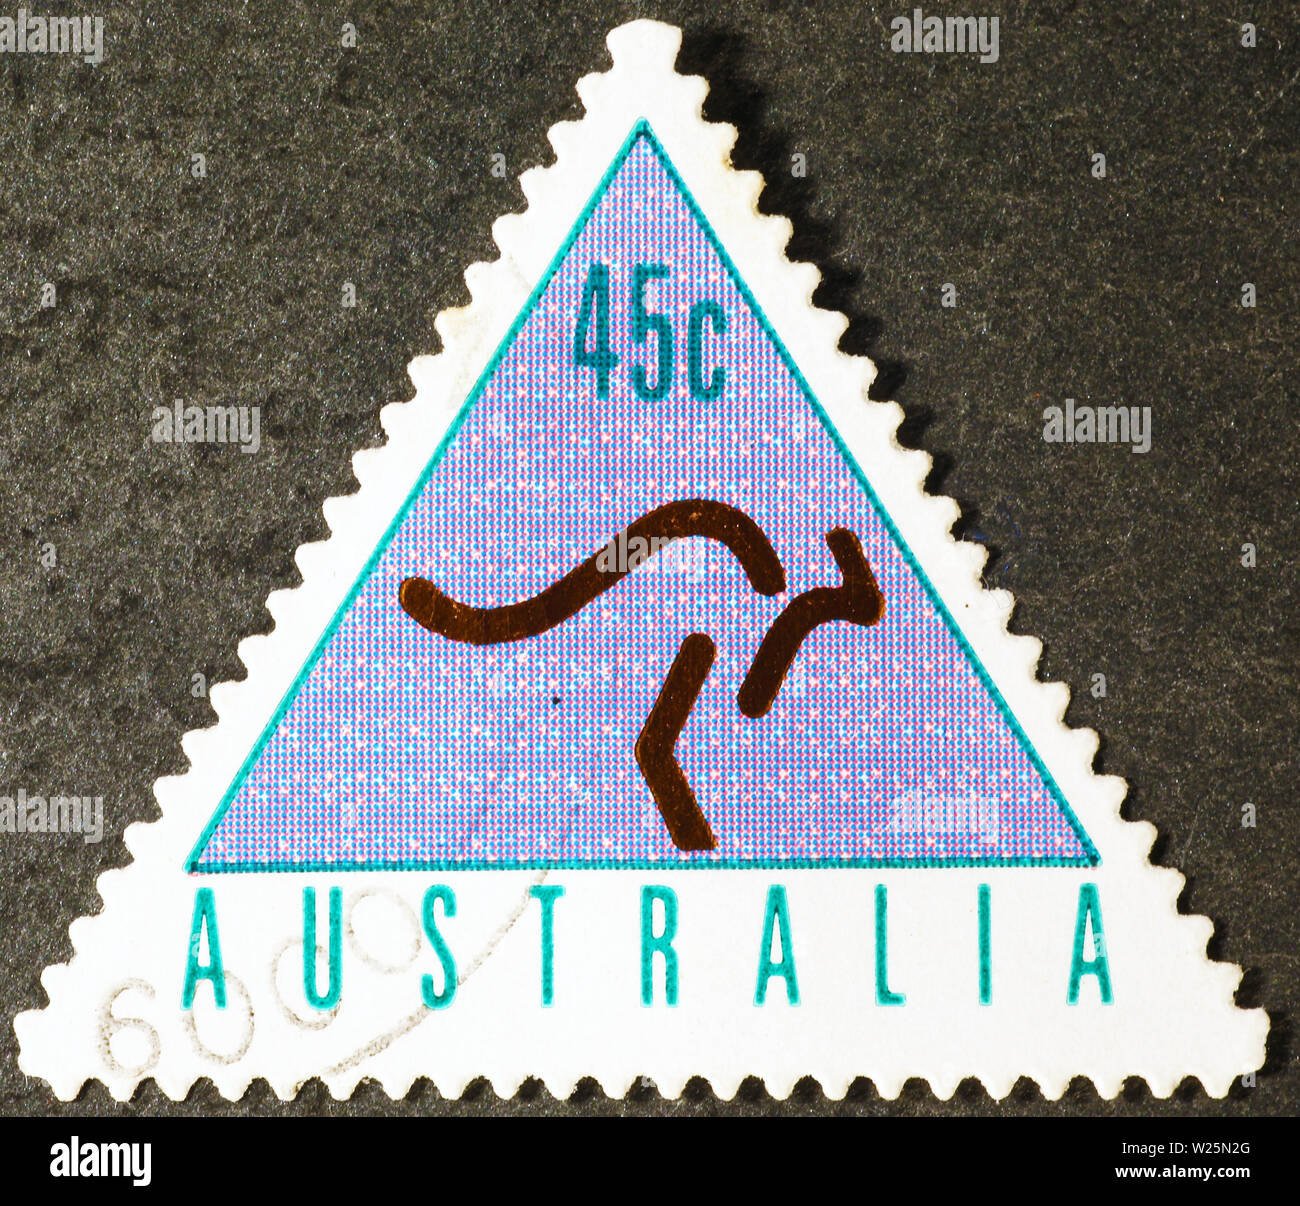 Stilisierte kangaroo auf australischen dreieckige Briefmarke Stockfoto